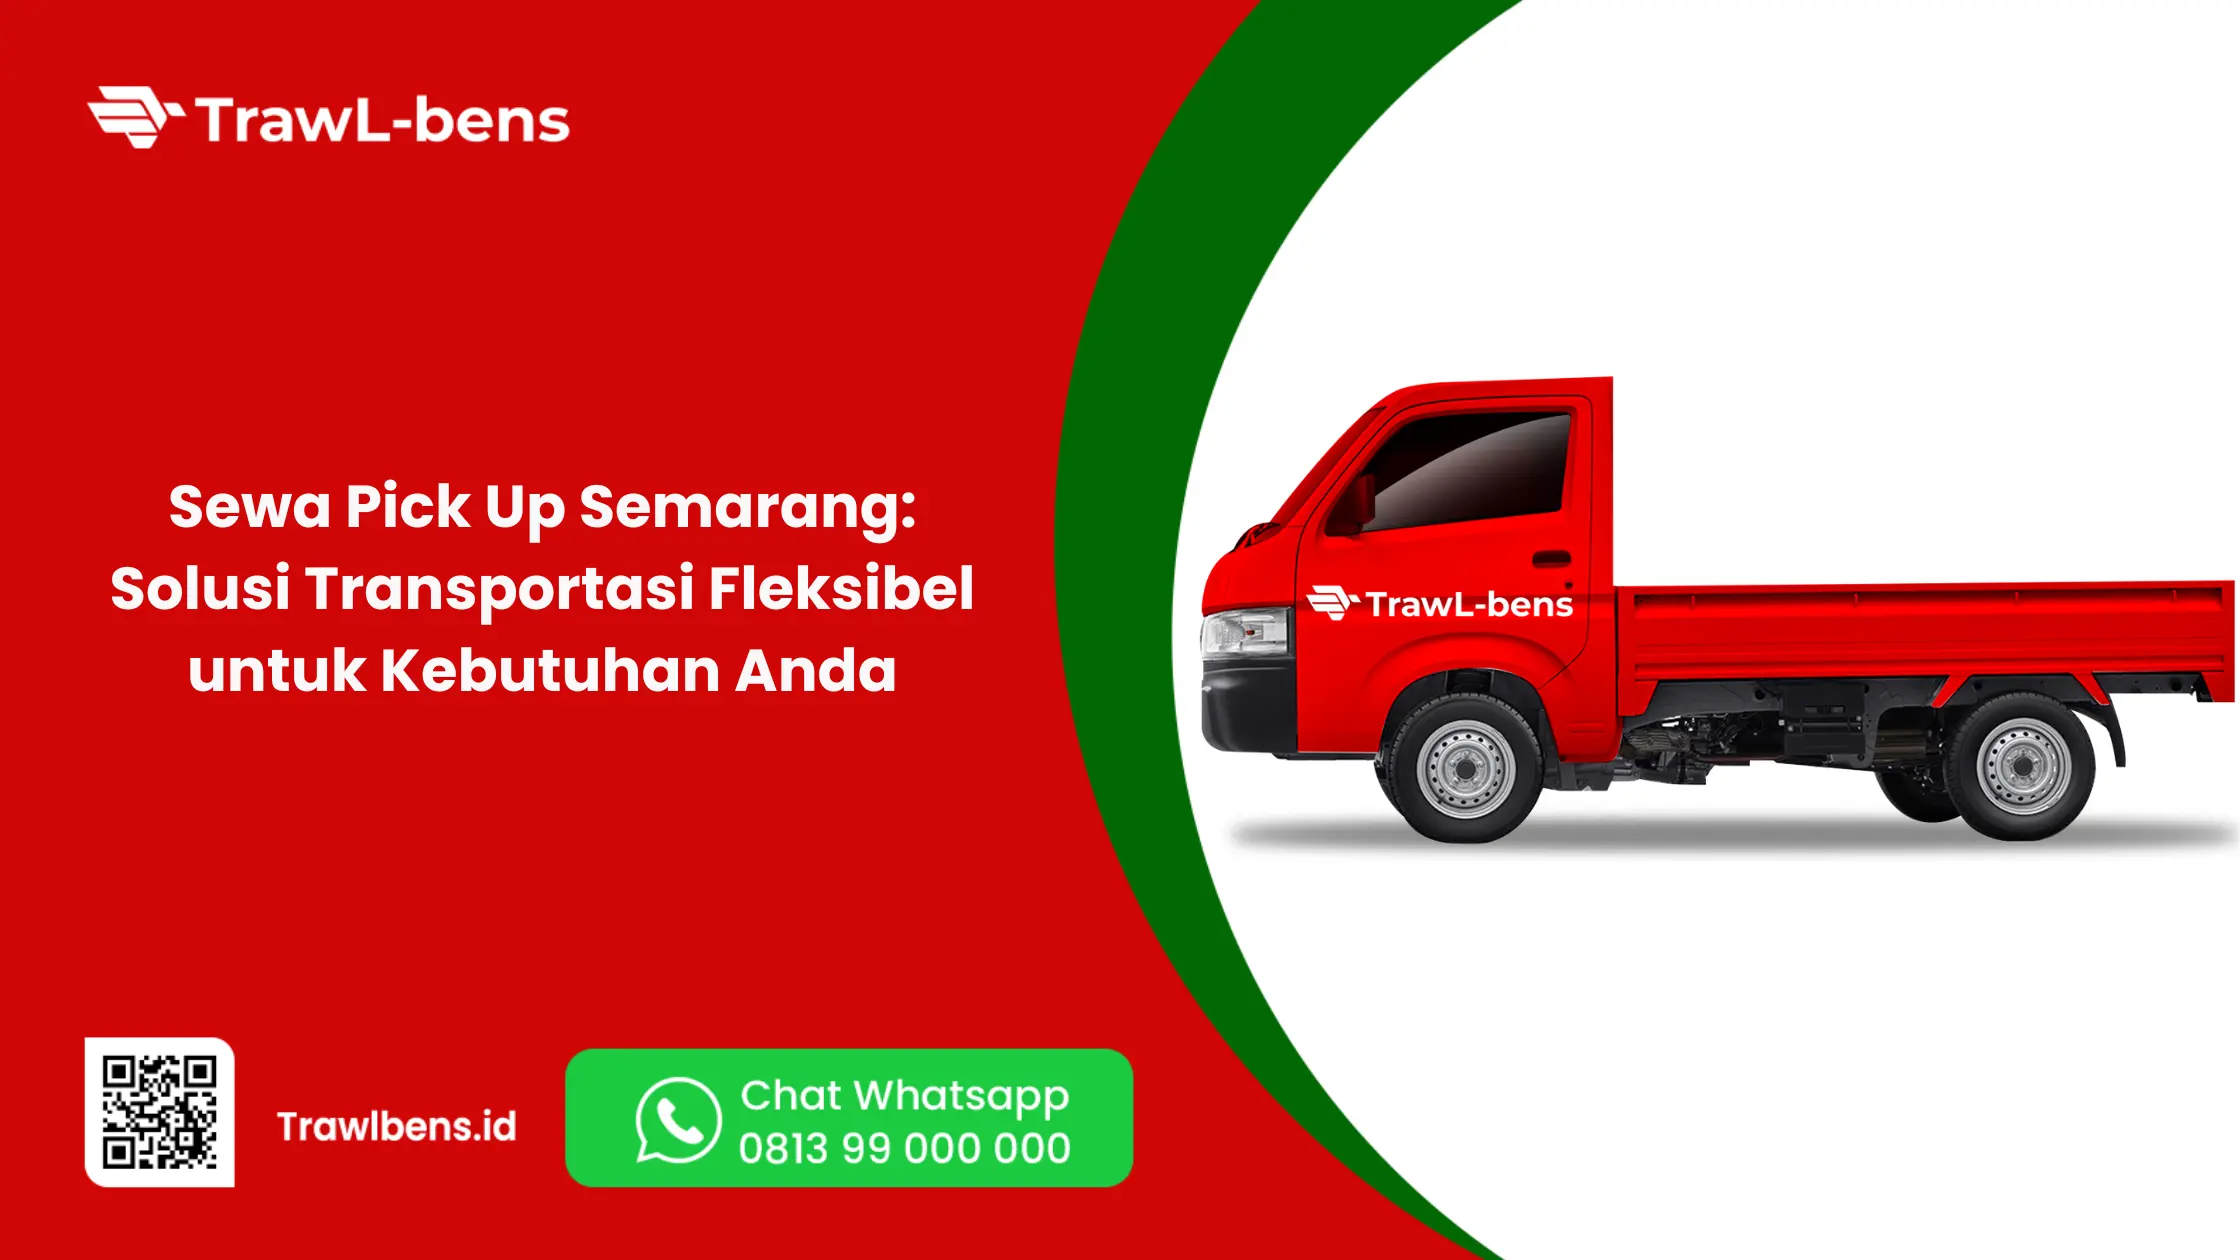 Sewa Pick Up Semarang: Solusi Transportasi Fleksibel untuk Kebutuhan Anda